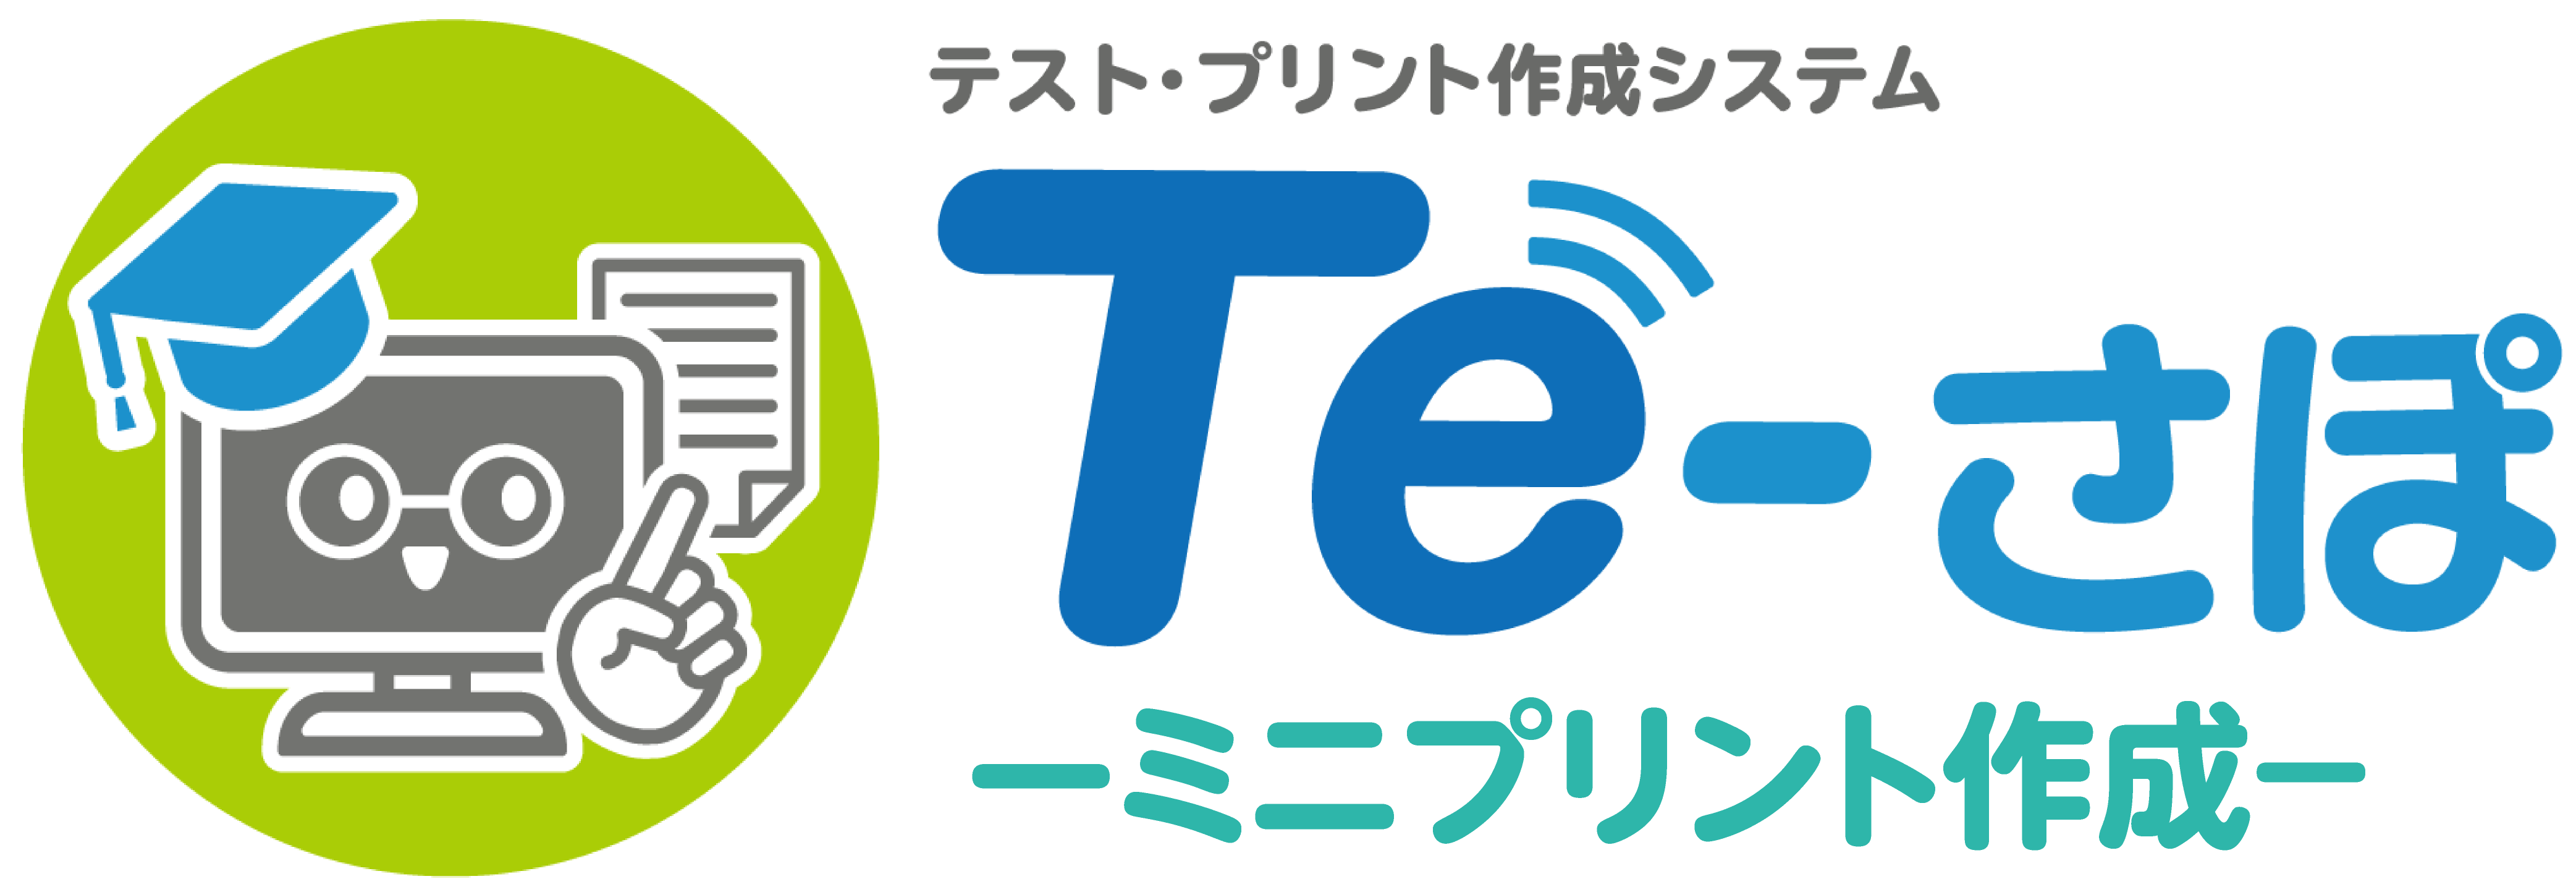 Te-さぽ2023(SAMPLE)